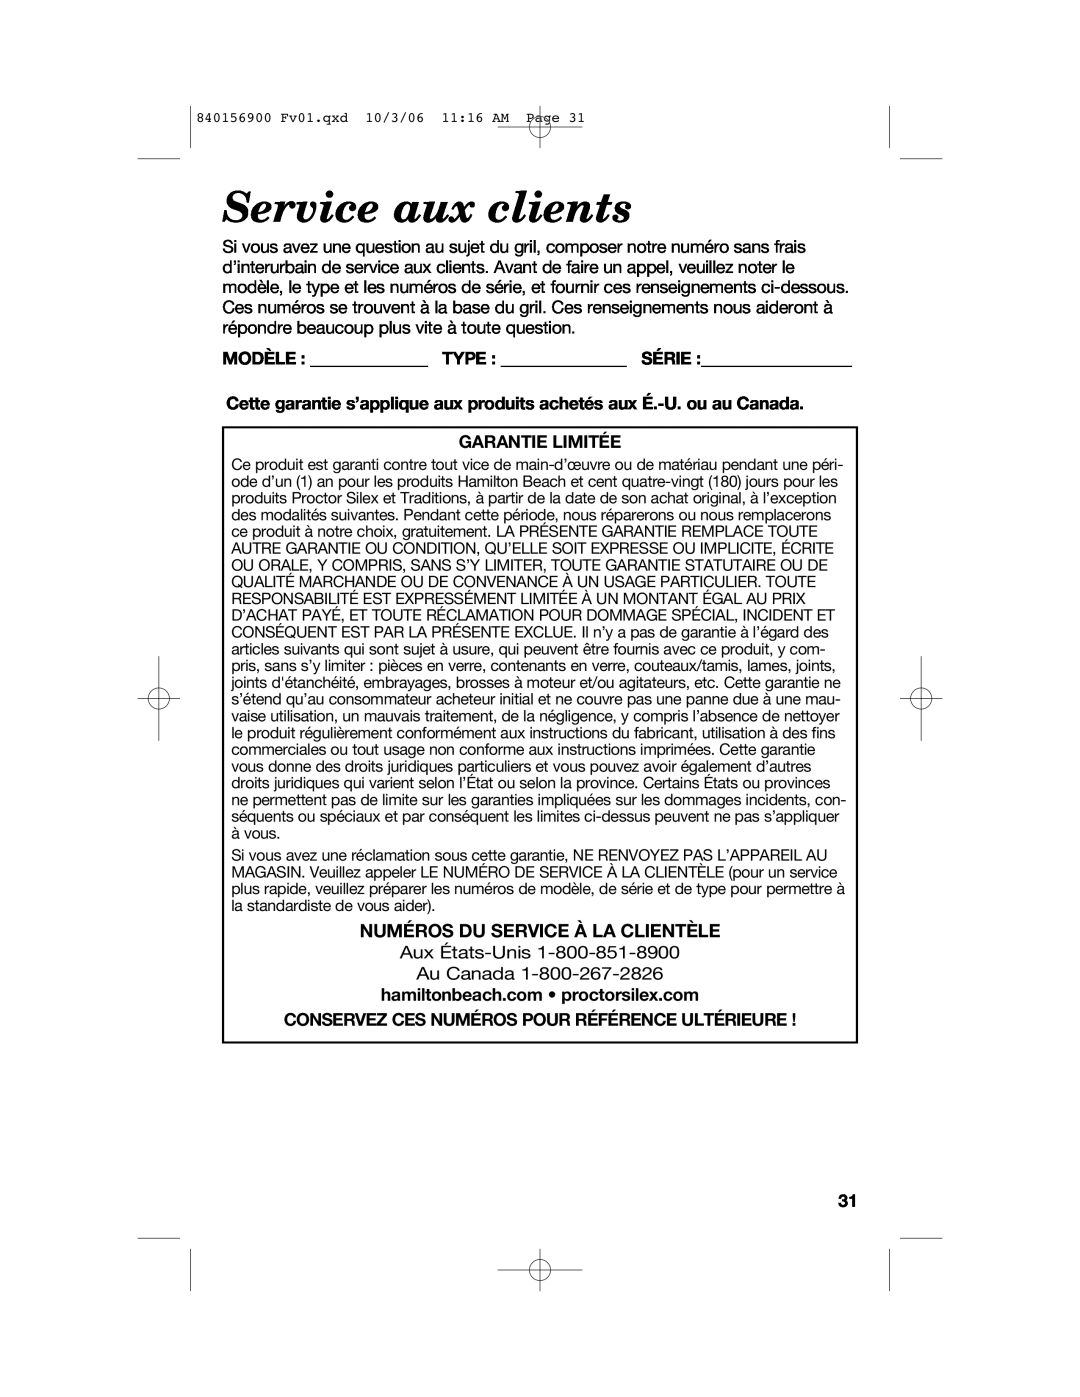 Hamilton Beach 25285 manual Service aux clients, Modèle Type Série, Garantie Limitée, hamiltonbeach.com proctorsilex.com 